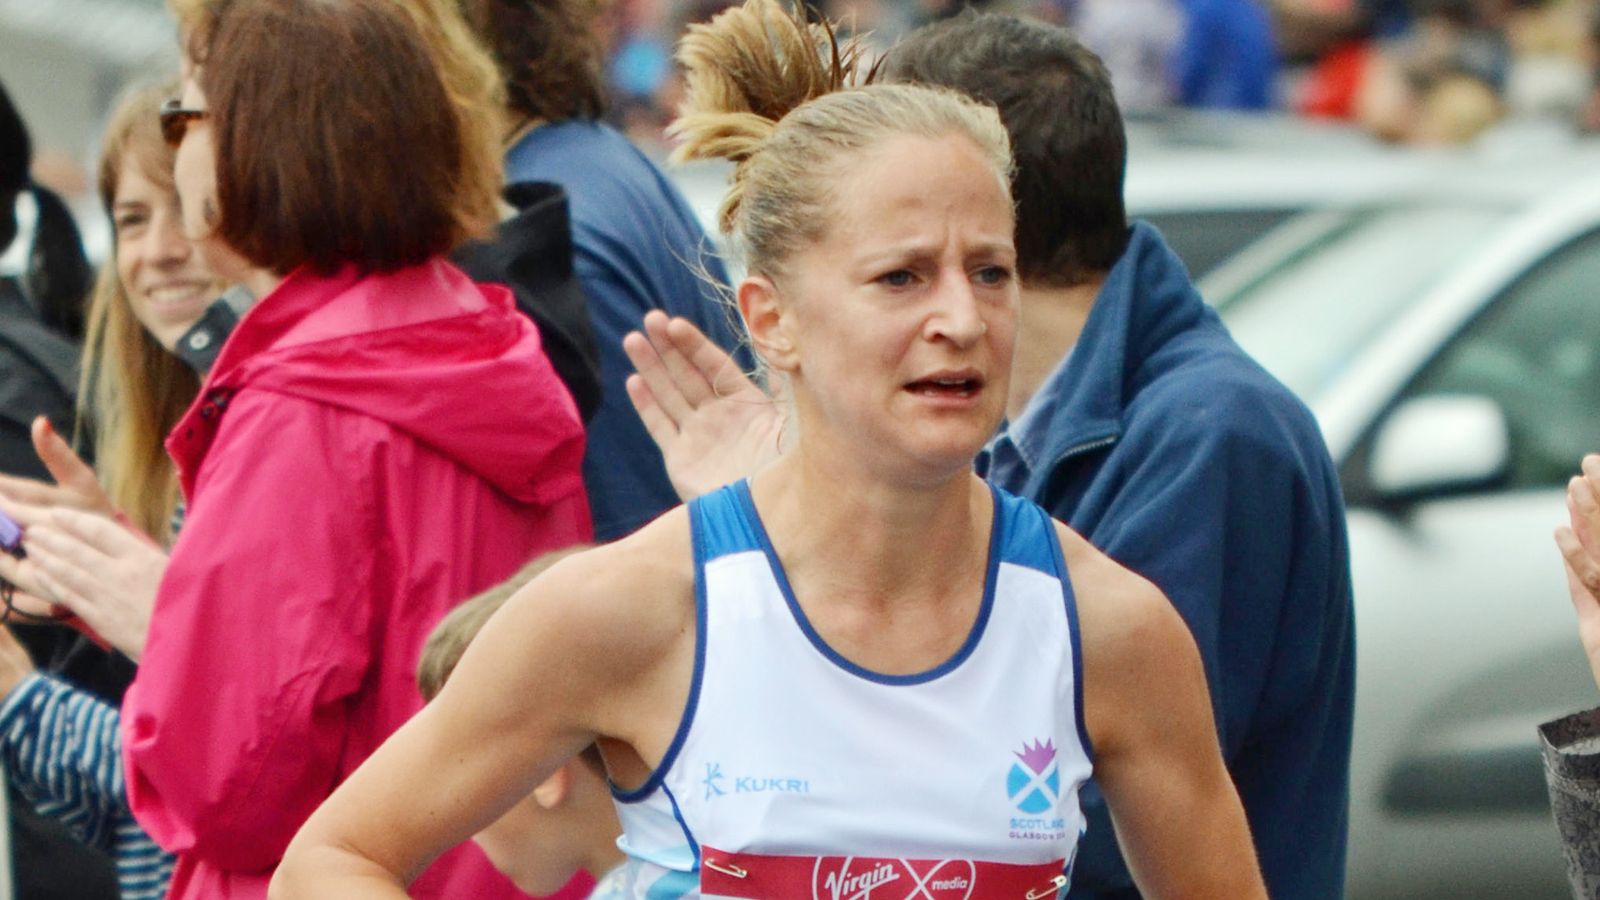 Scottish ultra-marathon runner Joasia Zakrzewski banned for 12 months for using car during race